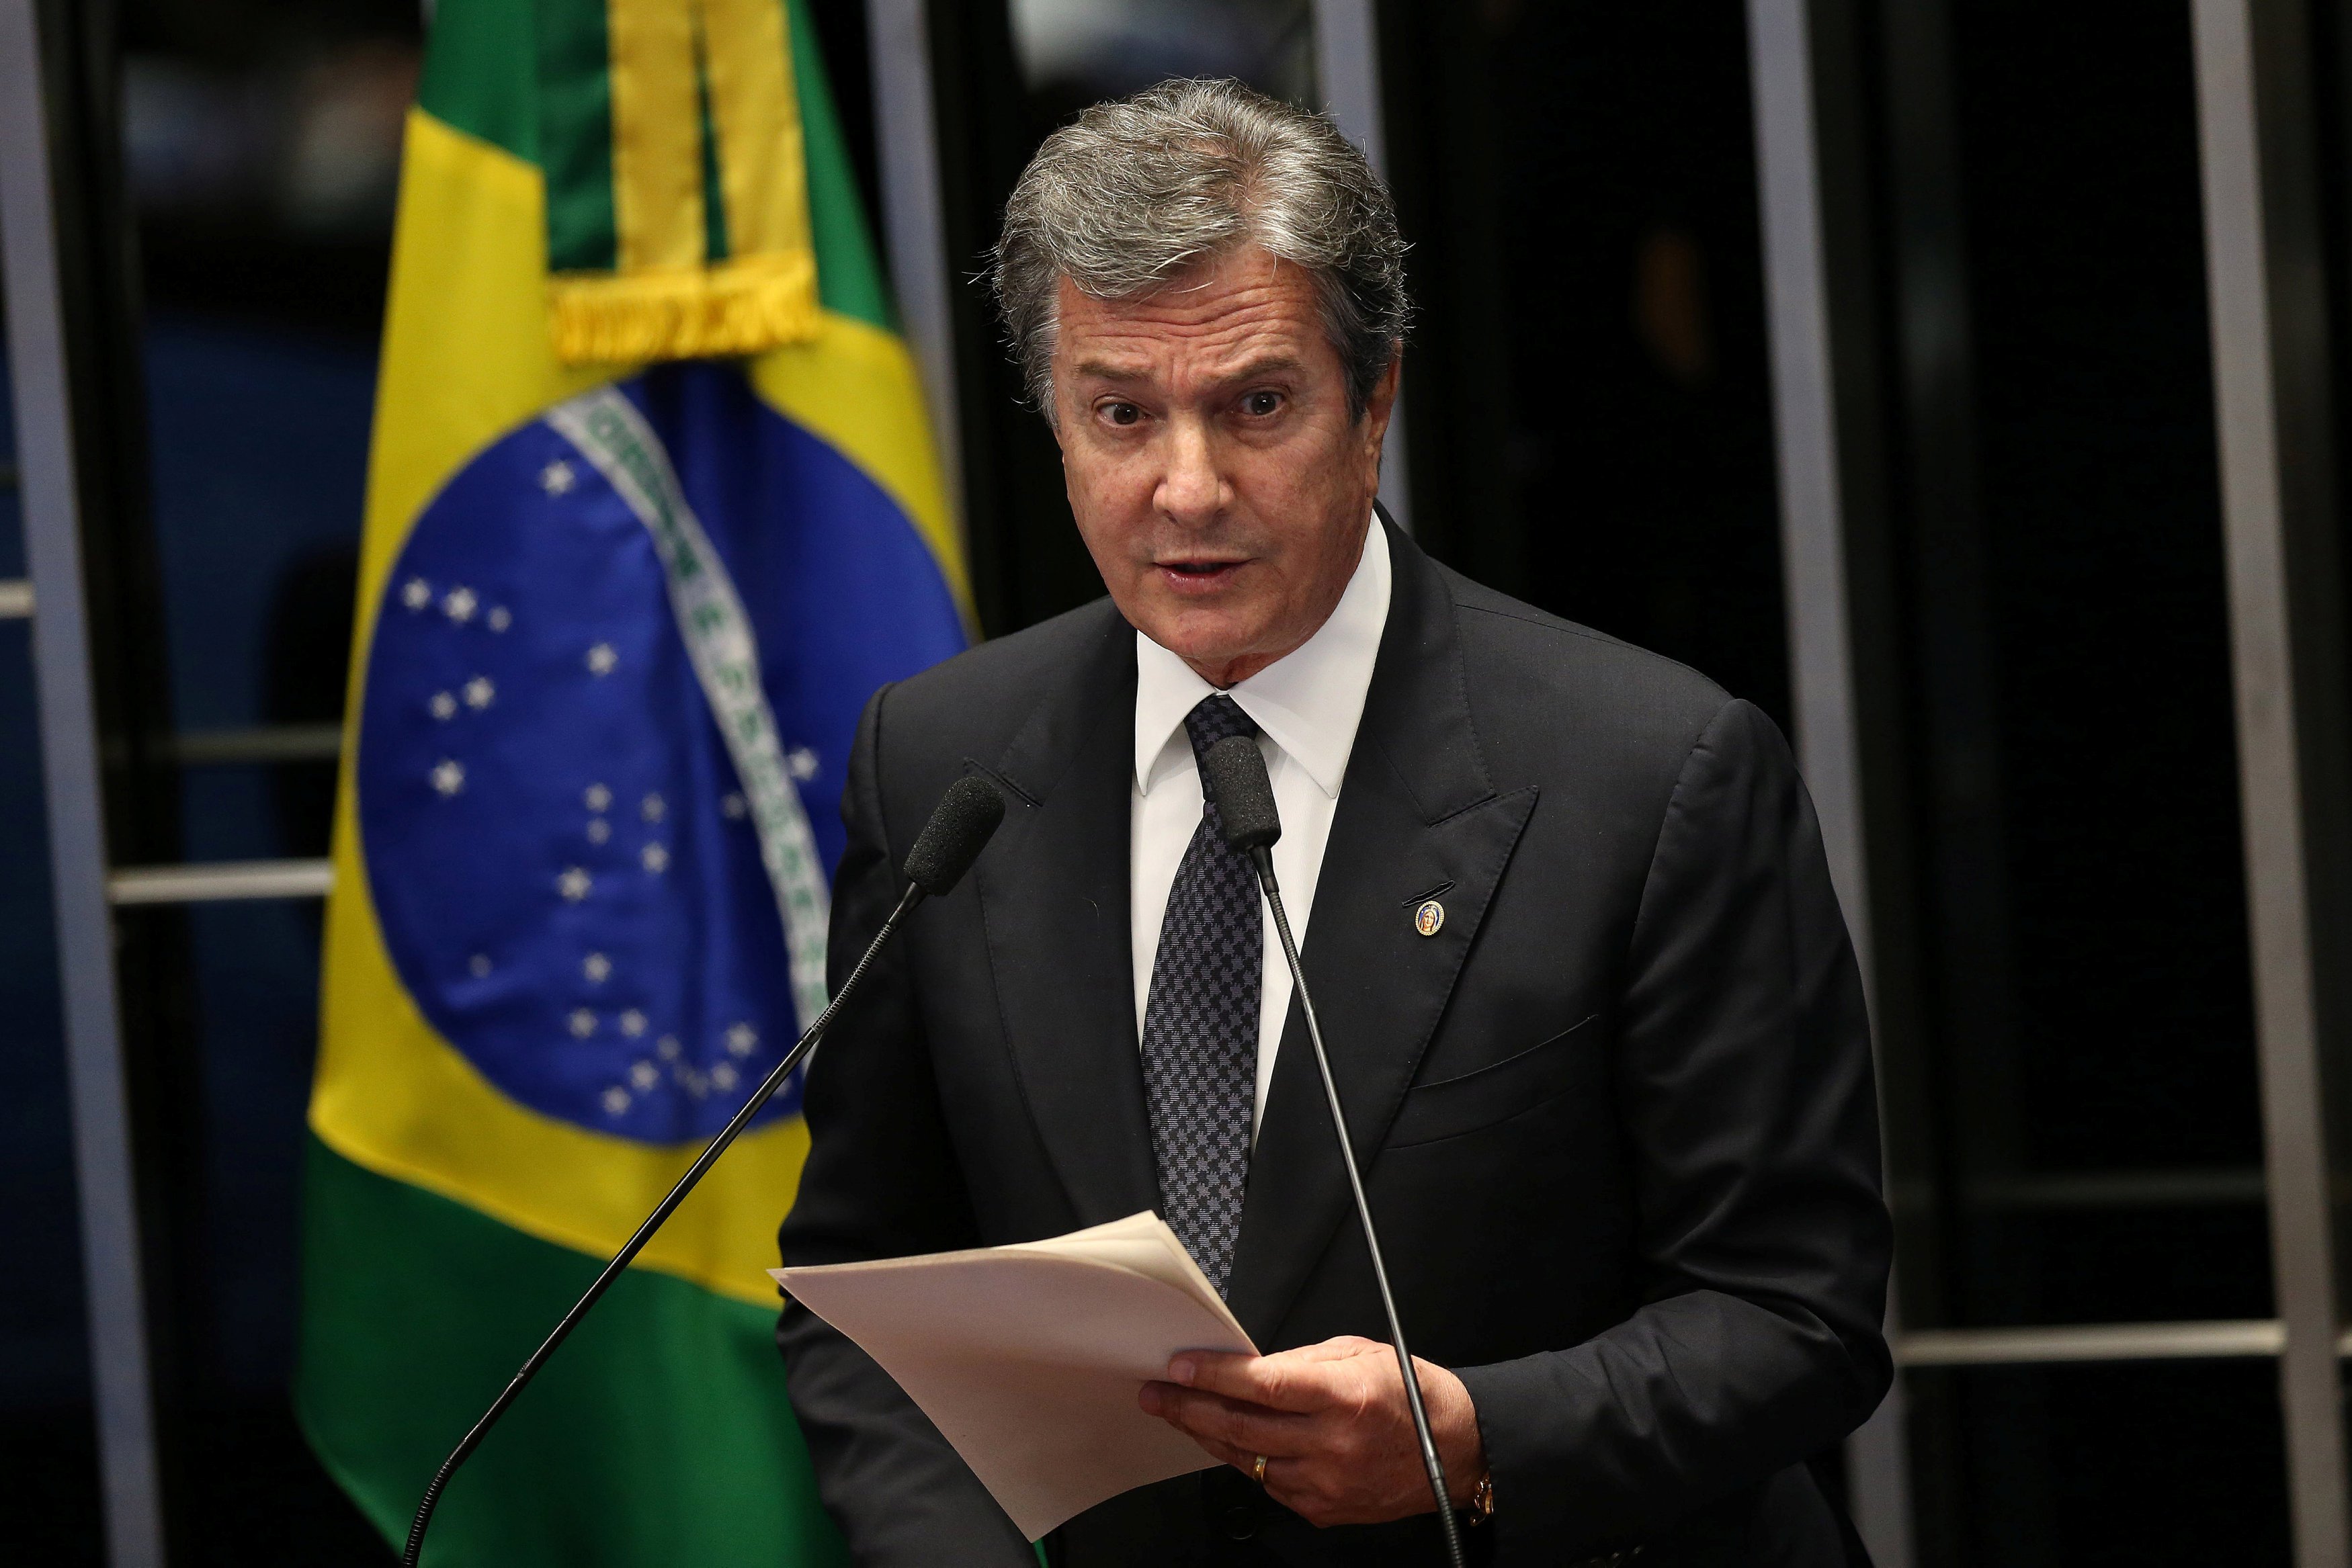 Expresidente destituido Fernando Collor votó contra Dilma Rousseff